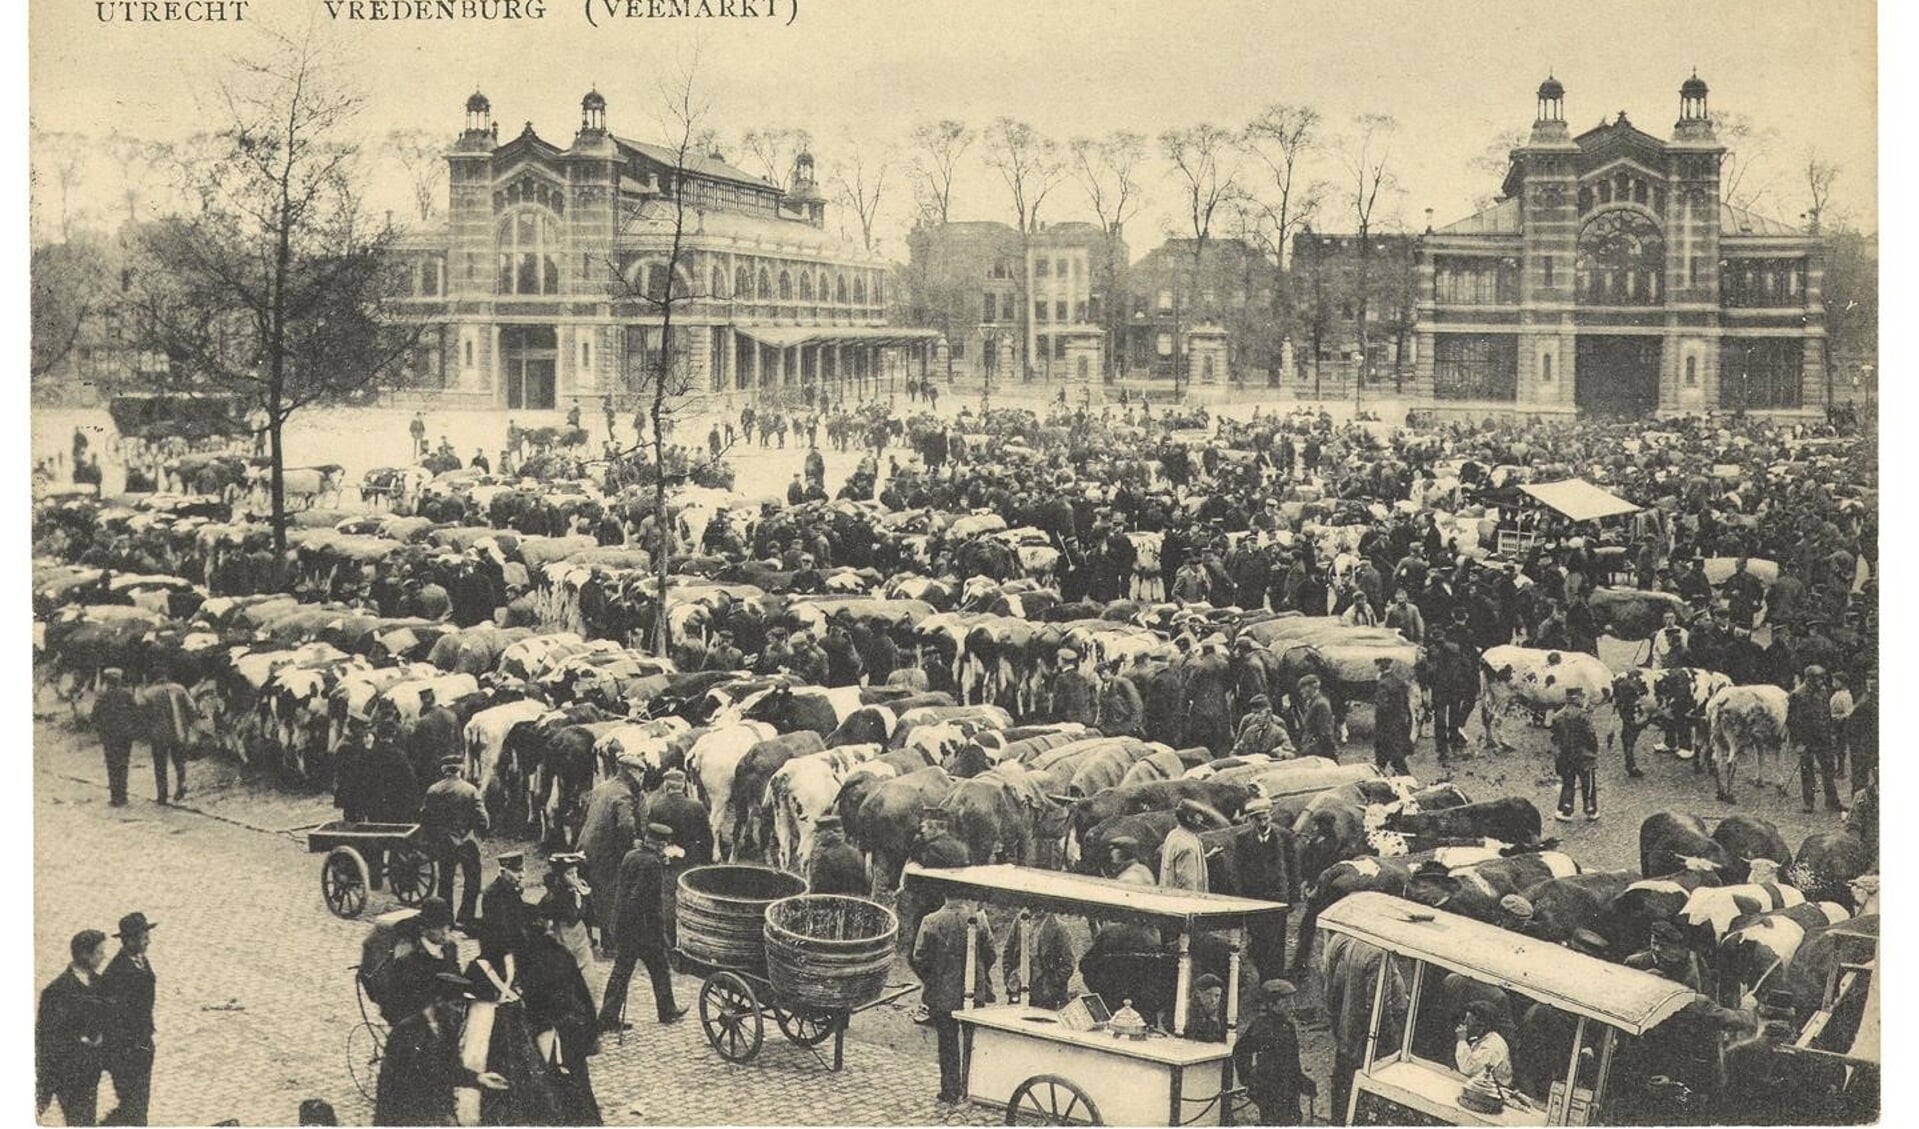 Veemarkt Vredenburg Utrecht (1907)